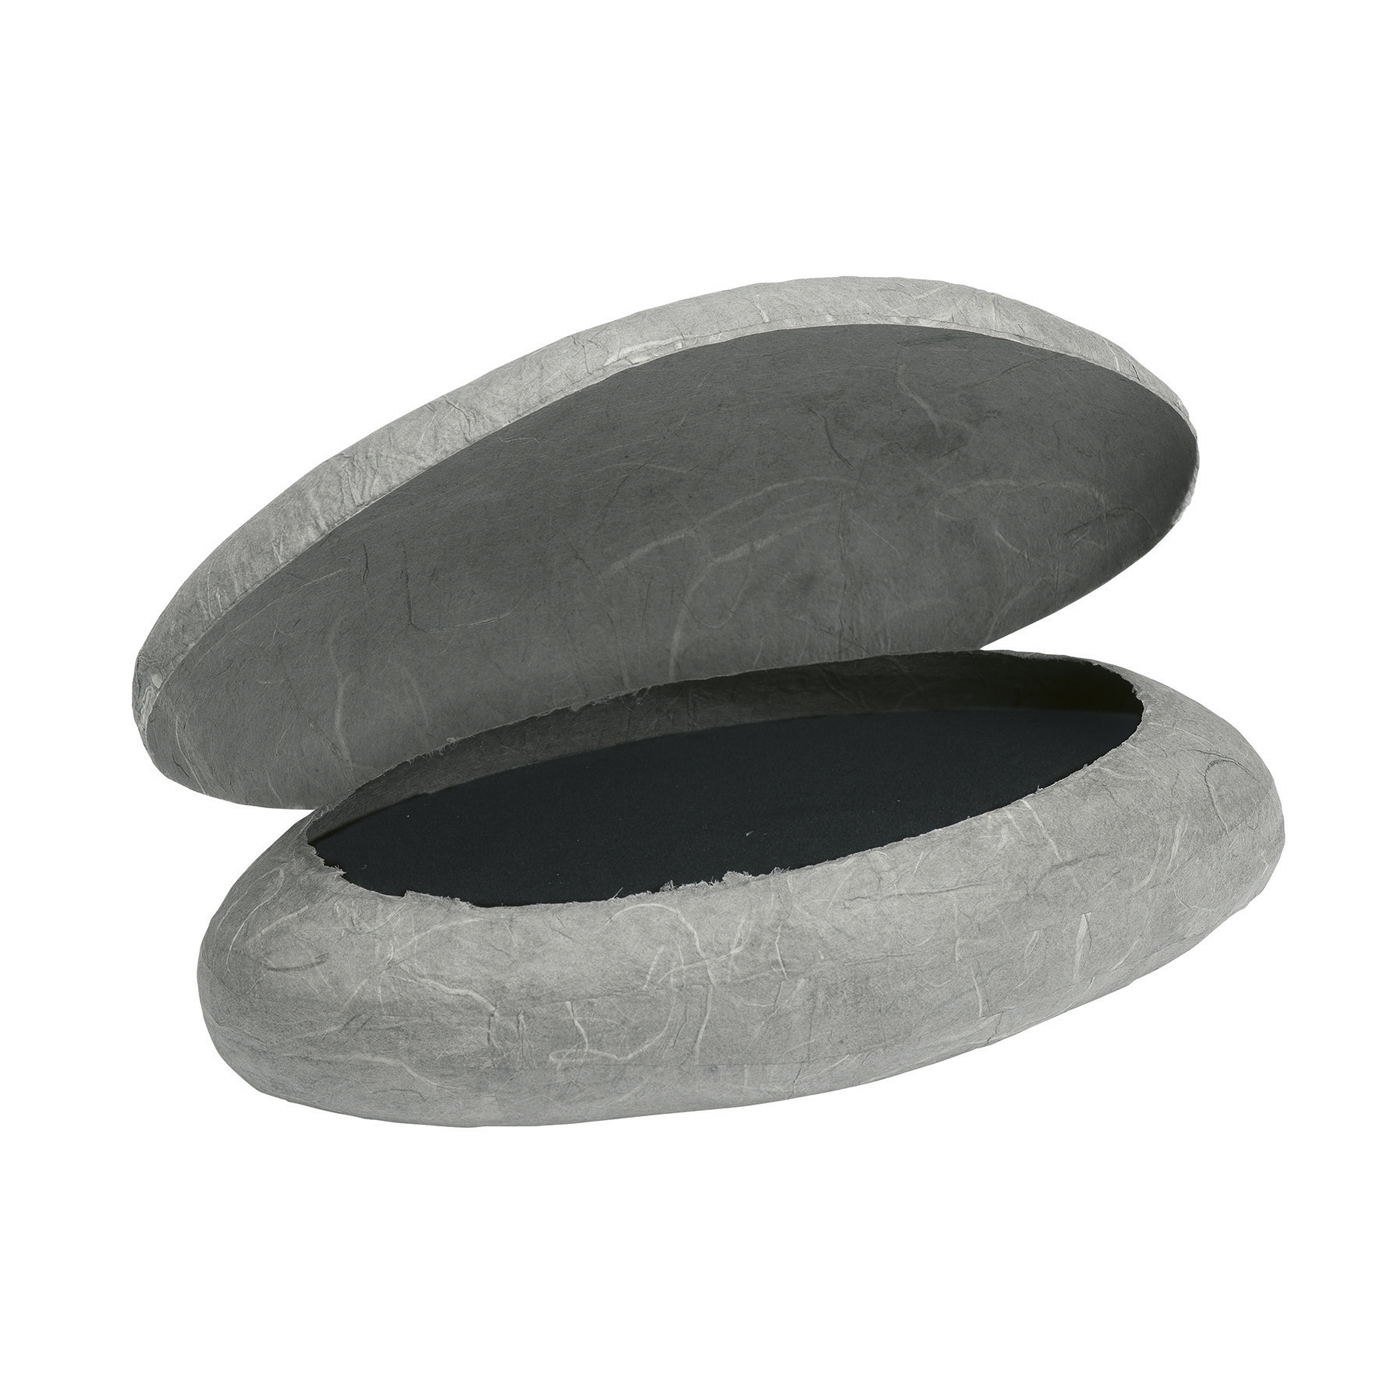 Jewellery Packaging "Stone", Grey, 150 x 100 x 45 mm - 1 piece